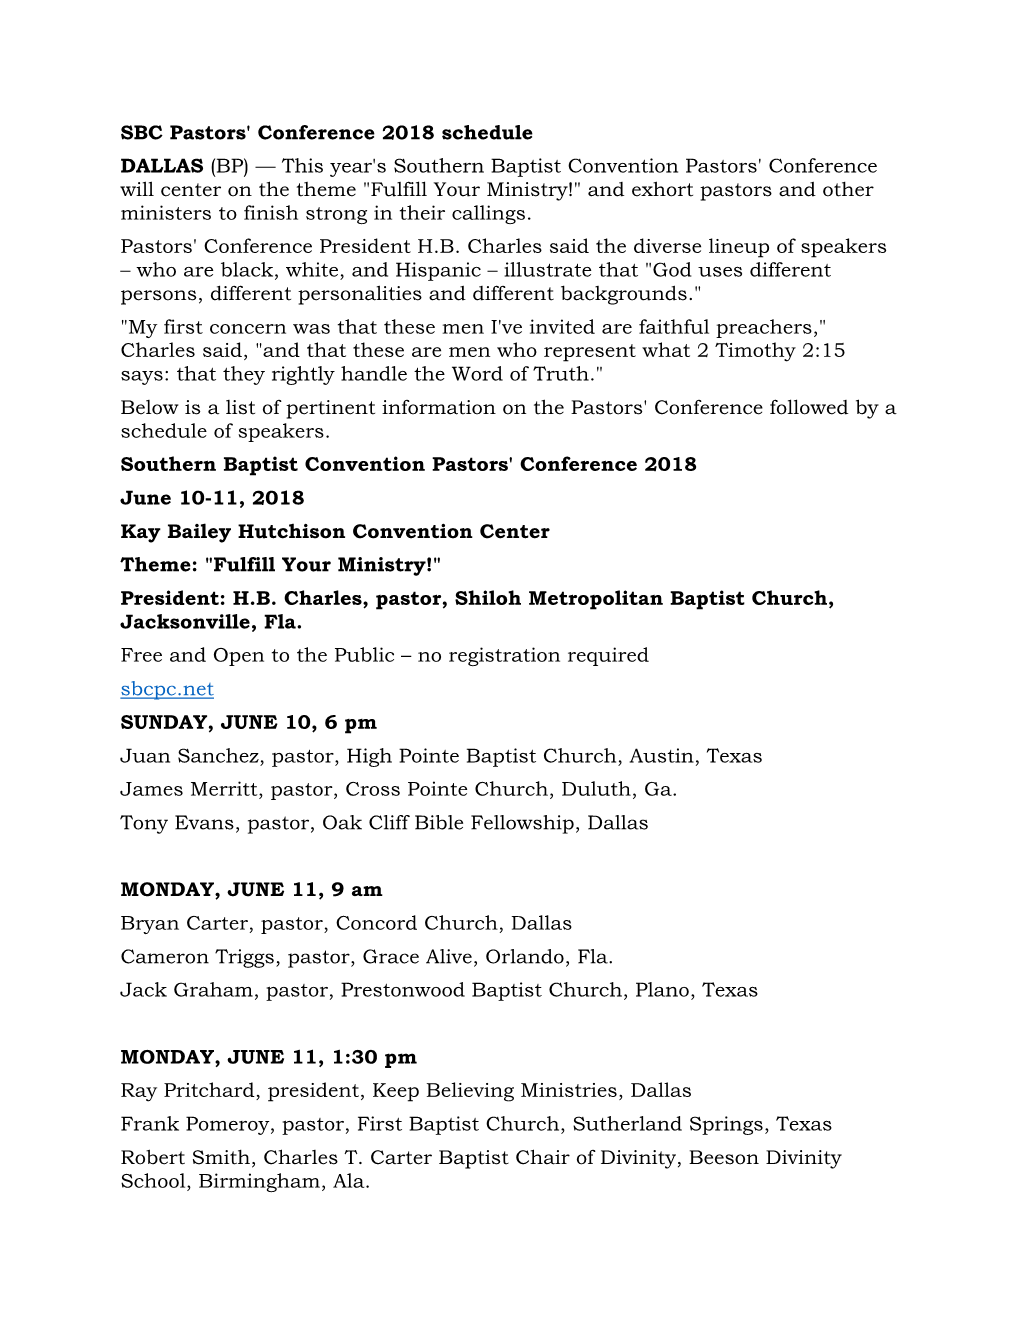 SBC Pastors' Conference 2018 Schedule